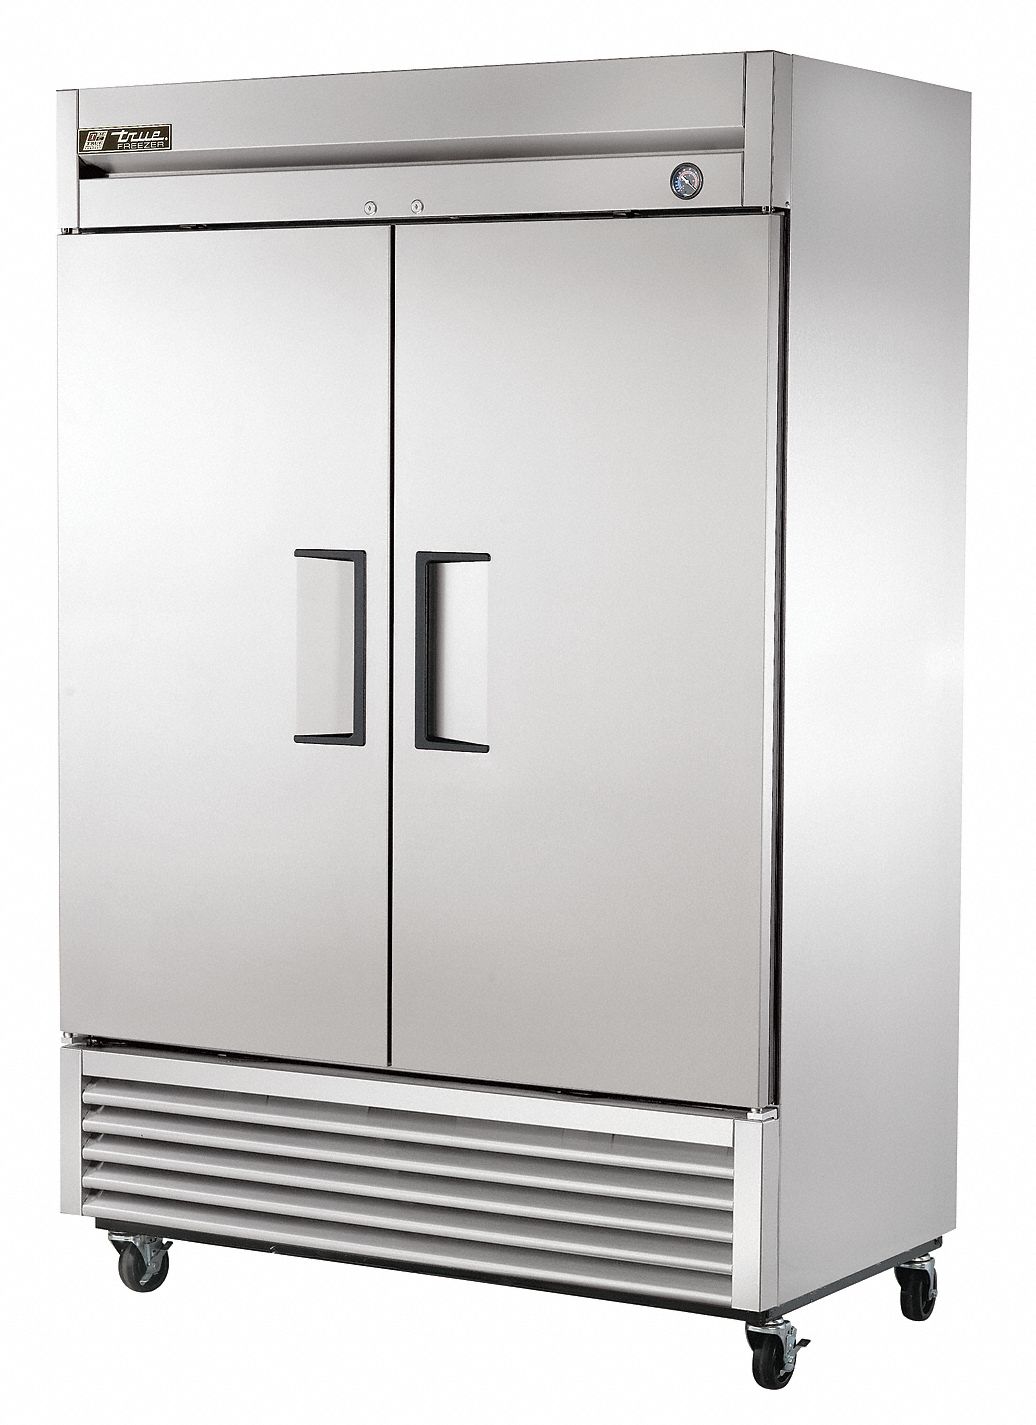 6PPJ4 - Freezer Double Solid Door 49 cu Ft.